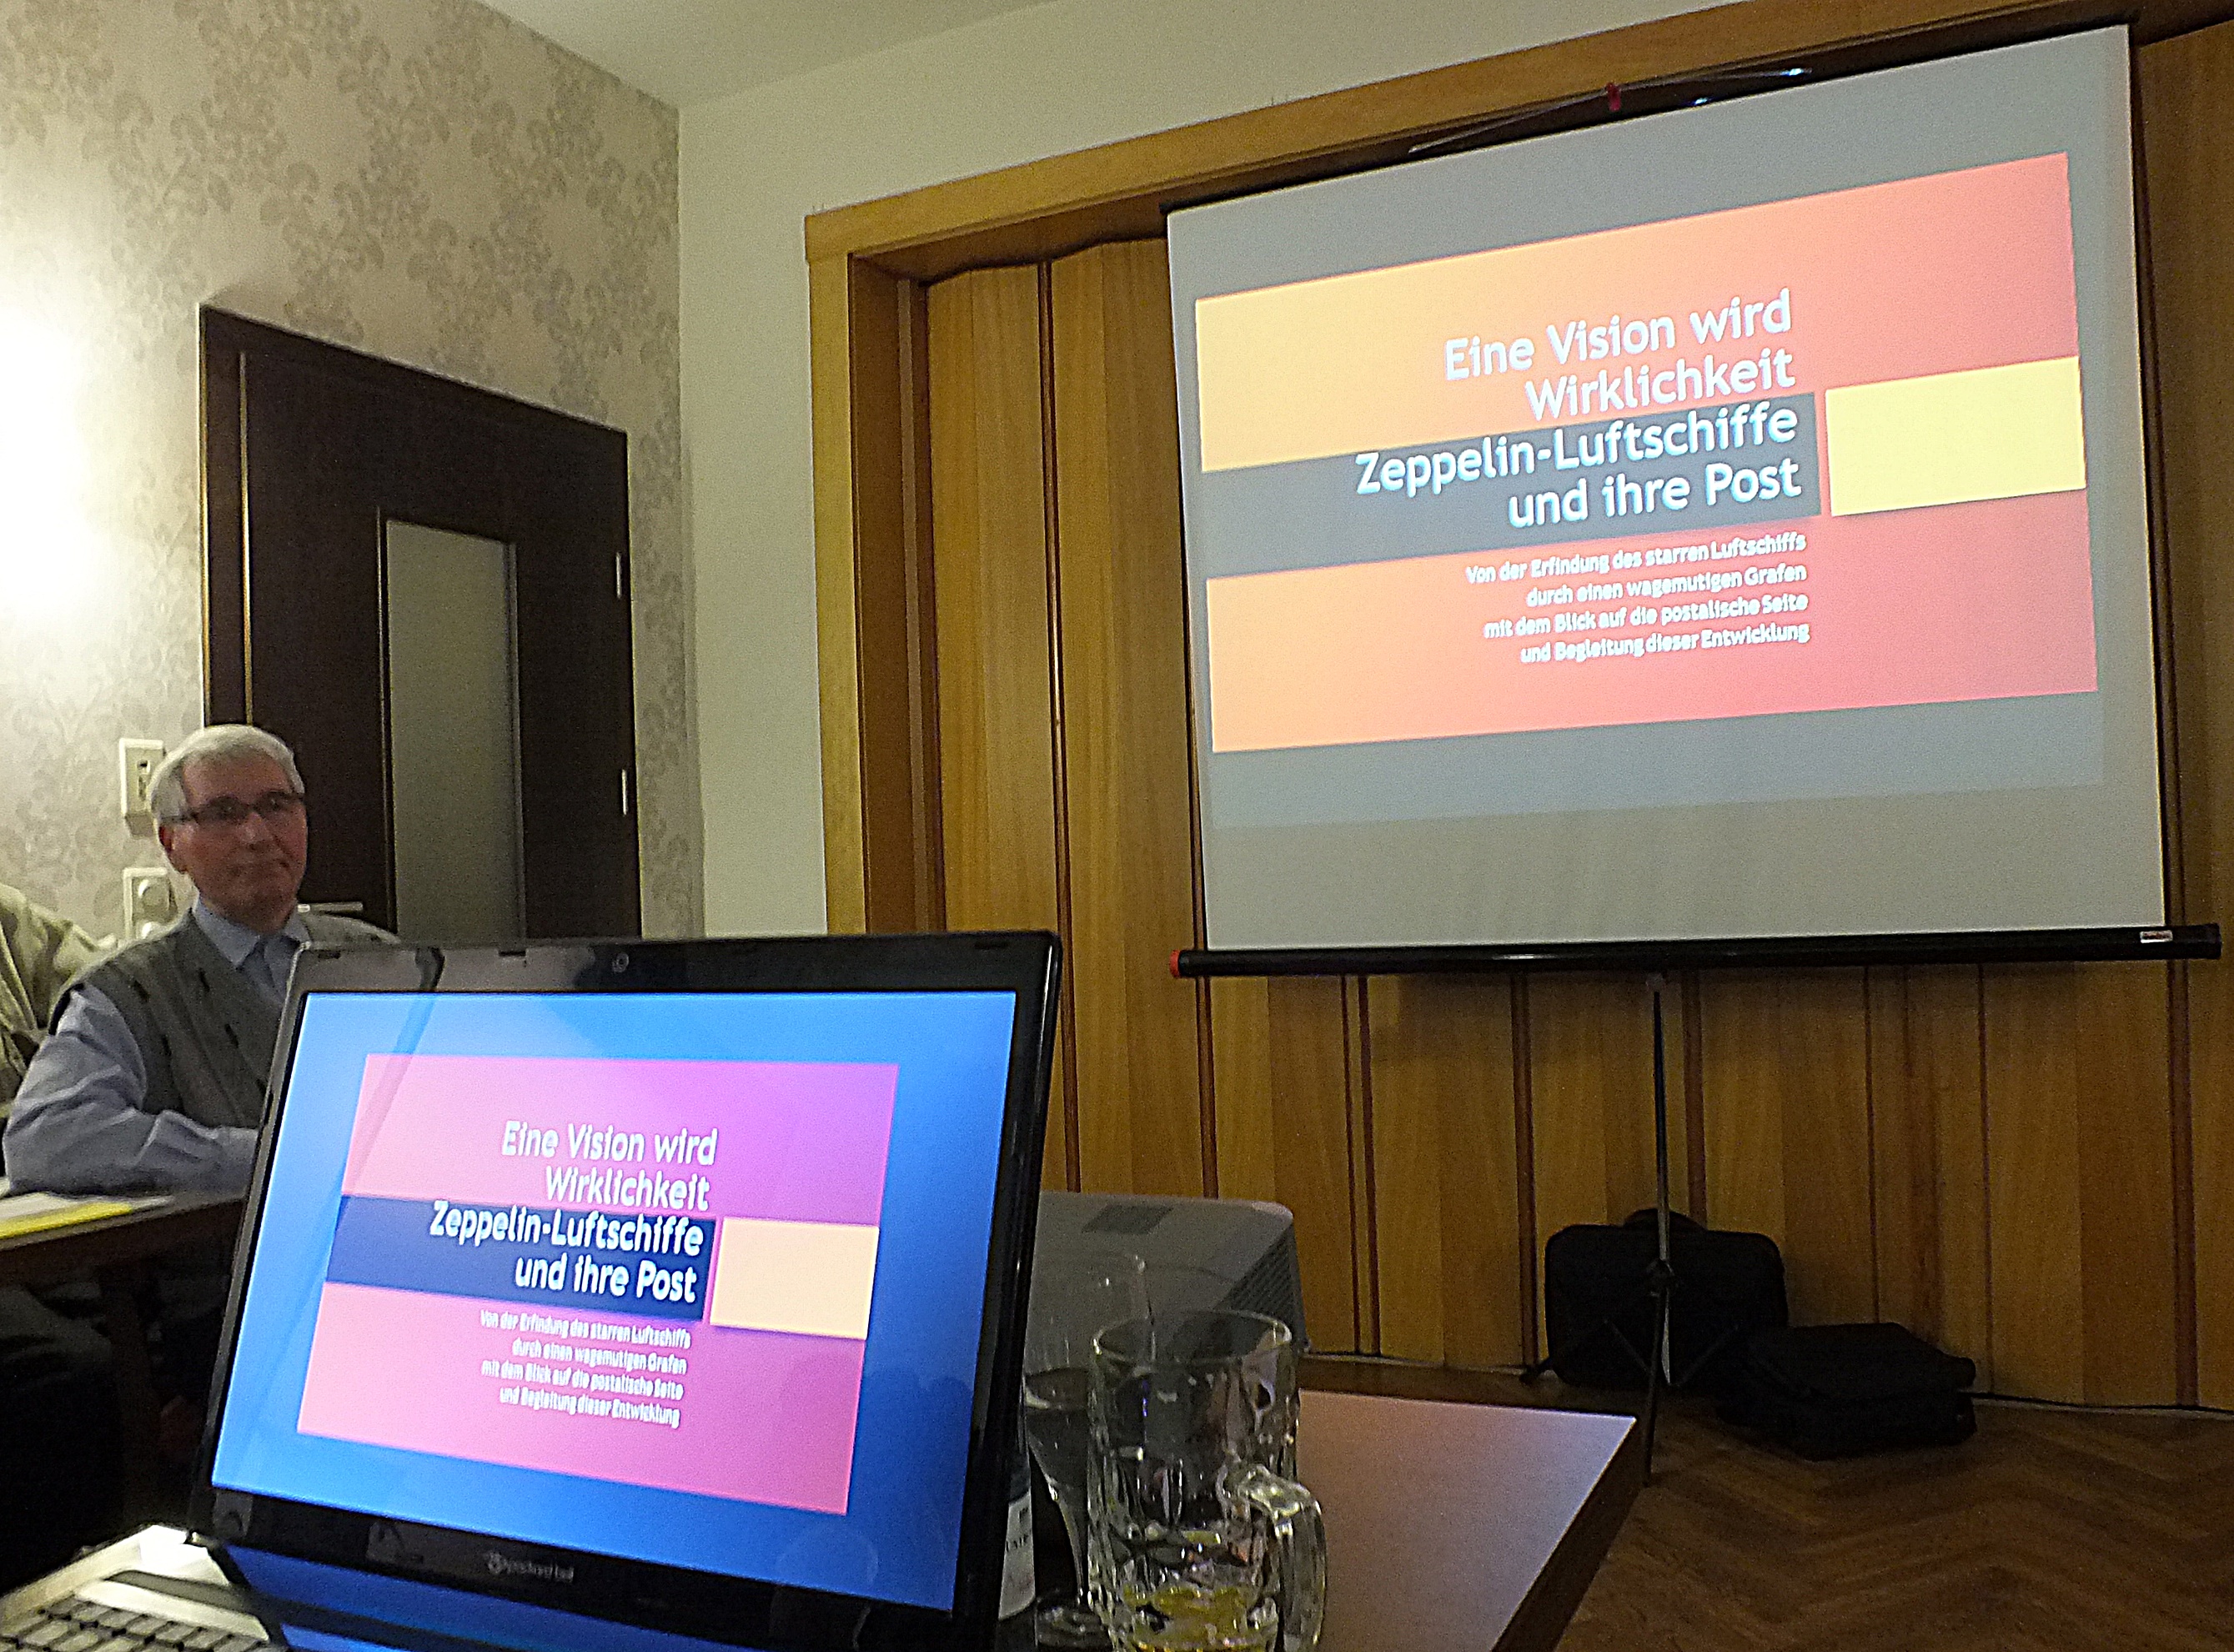 PowerPoint-Präsentation im Hotel "Grünhof" in Frankfurt (Oder) beim Vereinsabend